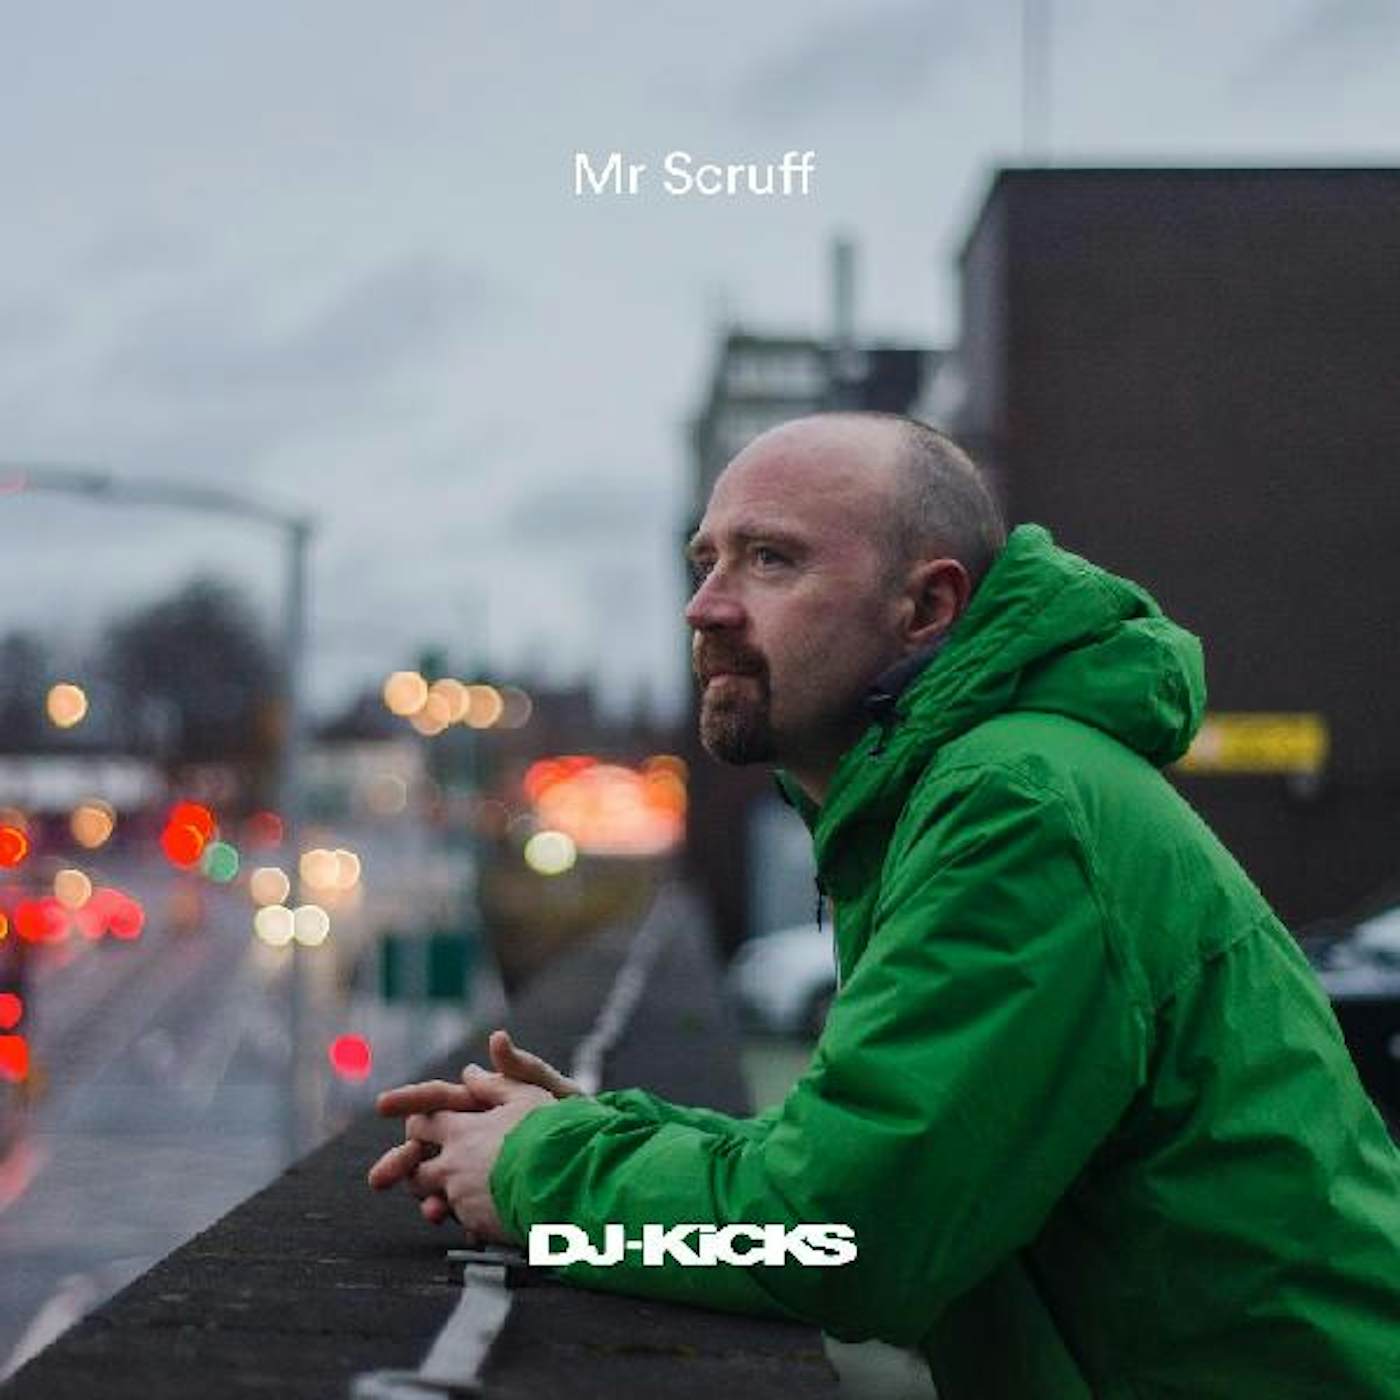 Mr. Scruff Dj Kicks Vinyl Record